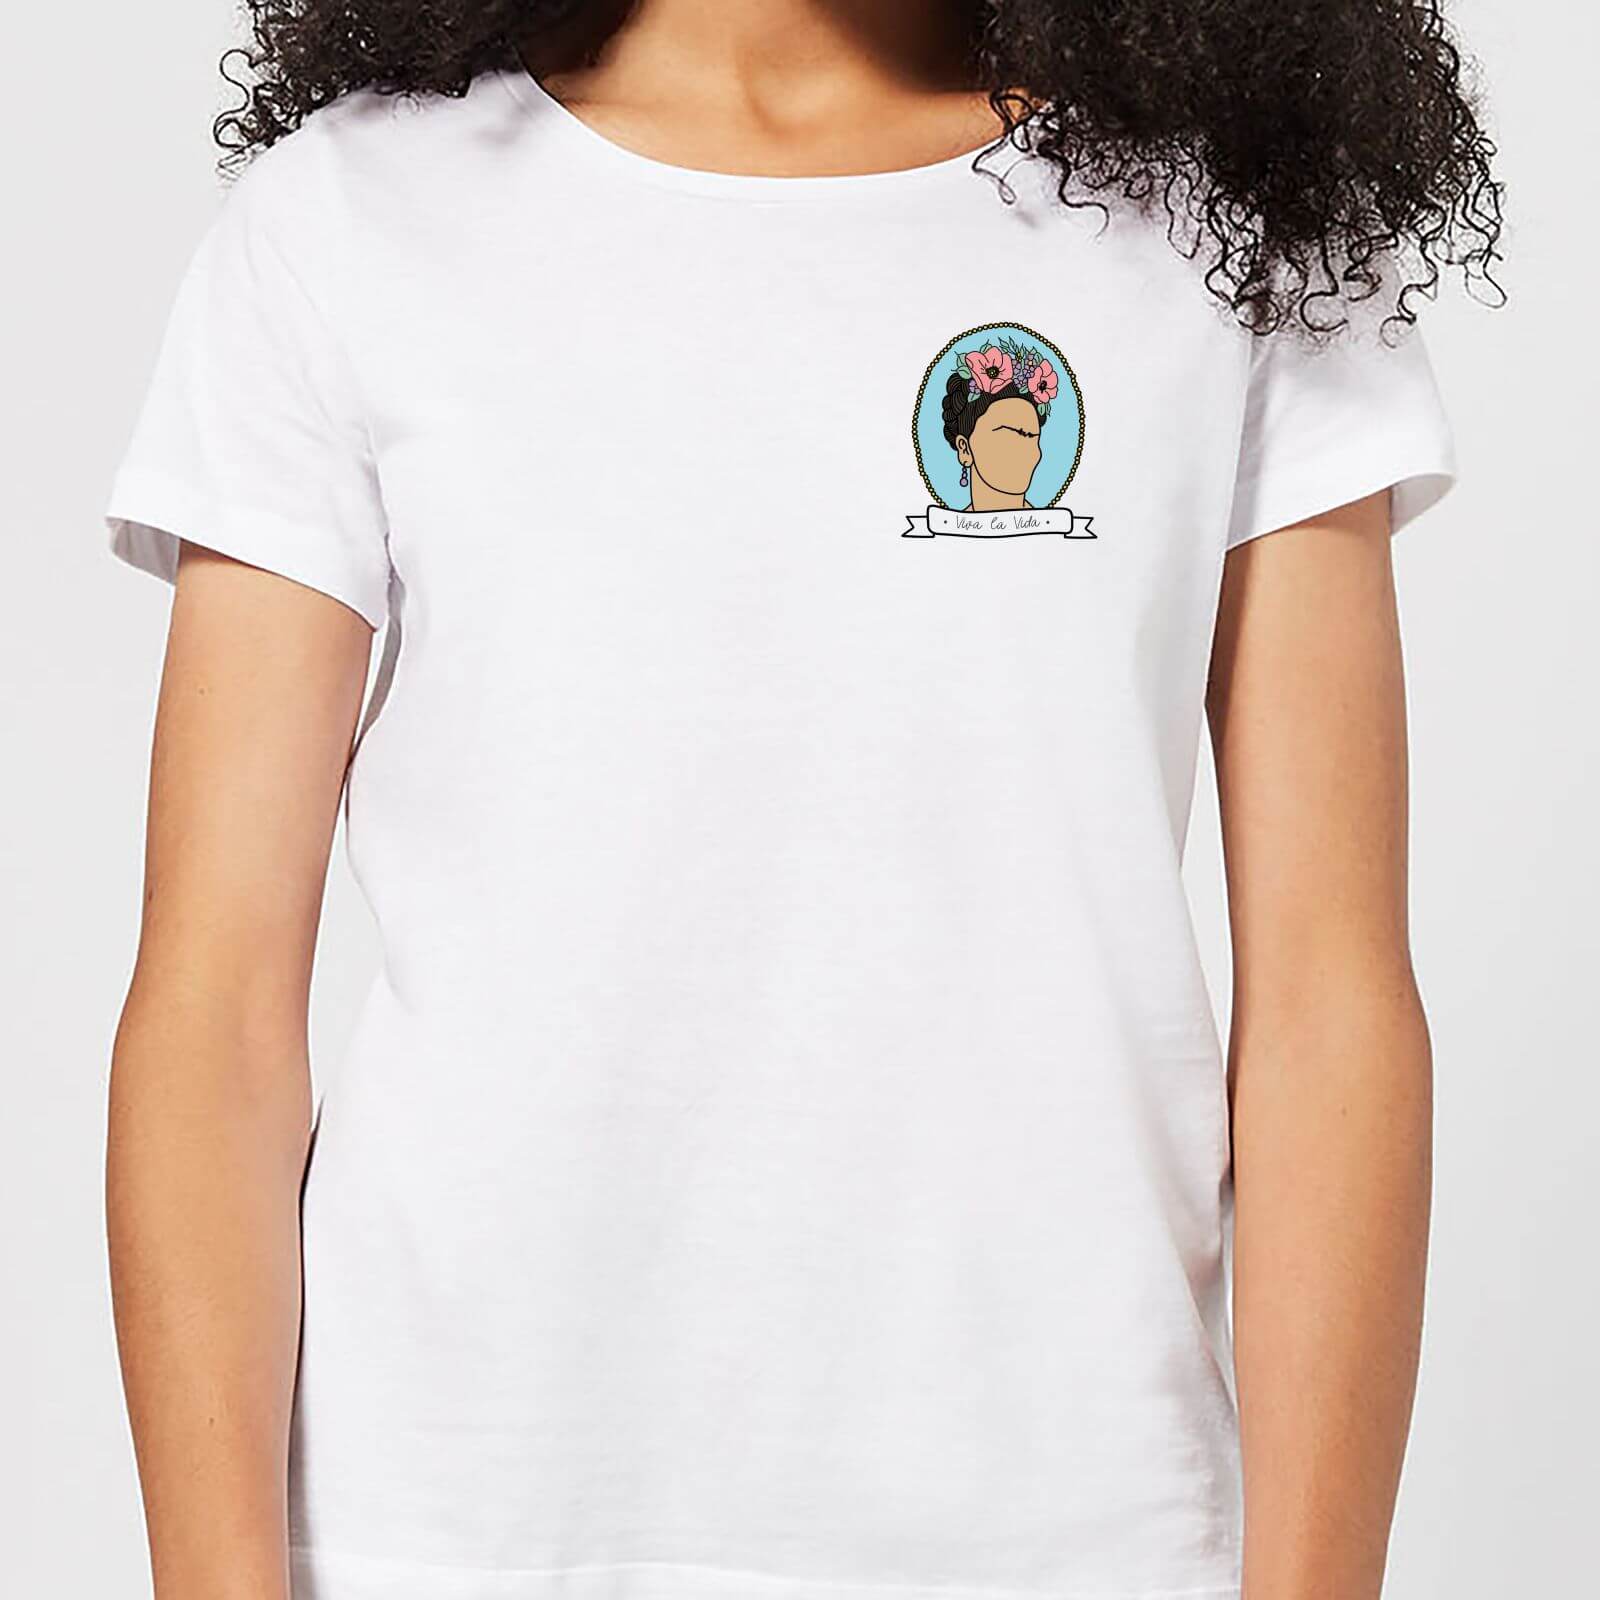 Viva La Vida Women's T-Shirt - White - S - White